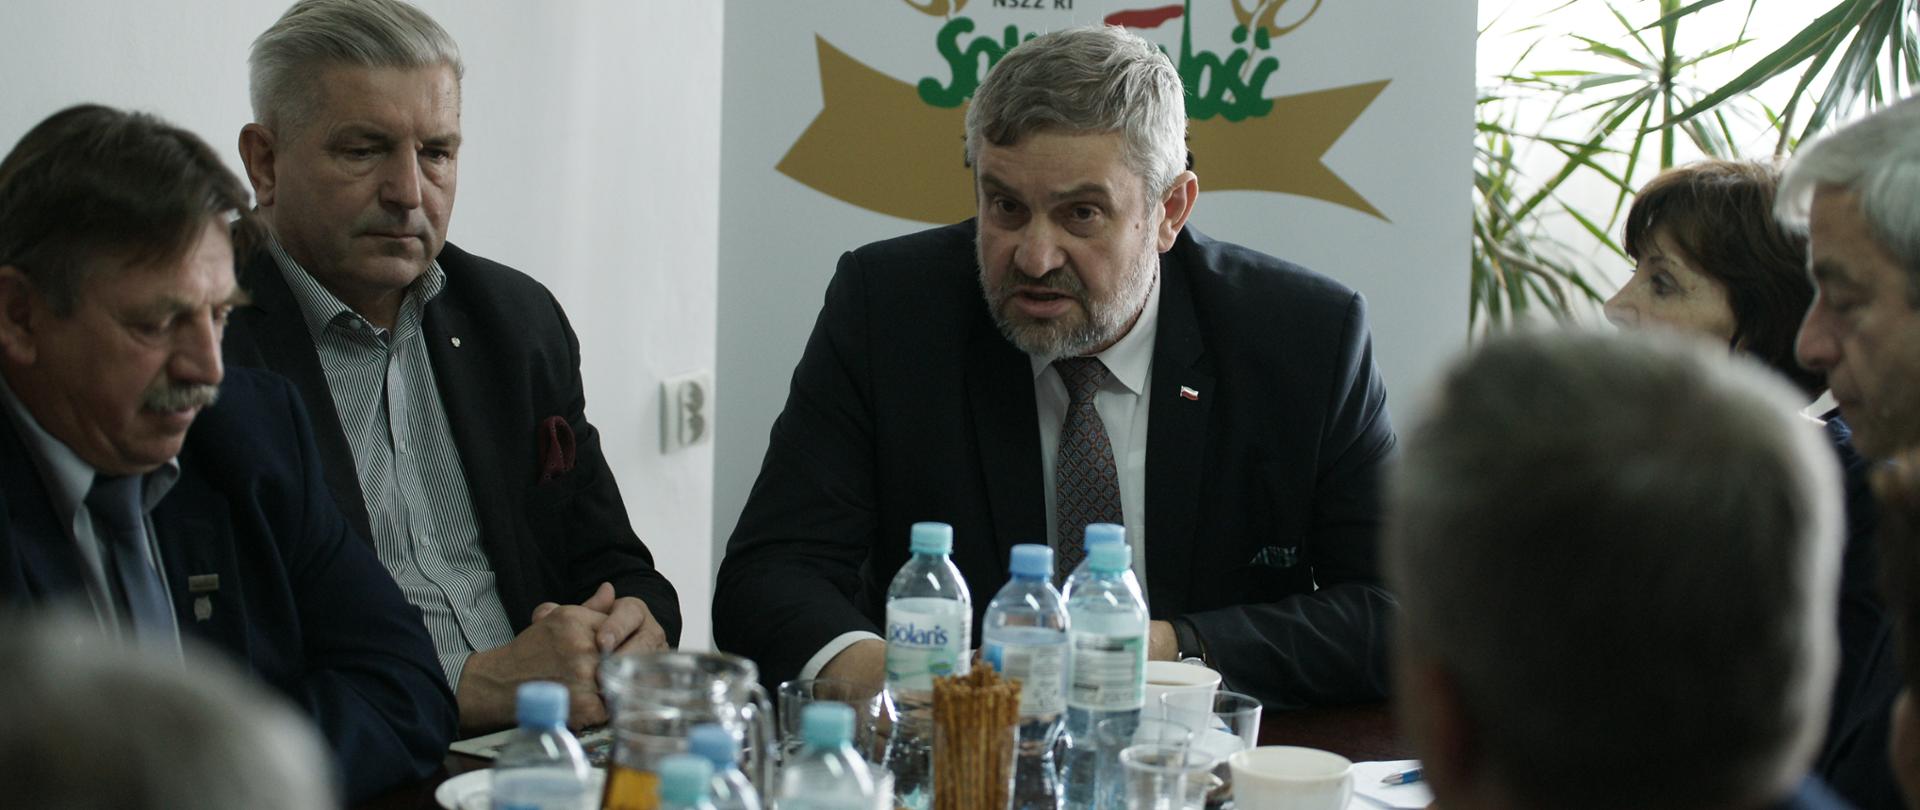 Minister Ardanowski podczas dyskusji z przedstawicielami NSZZ RI Solidarność